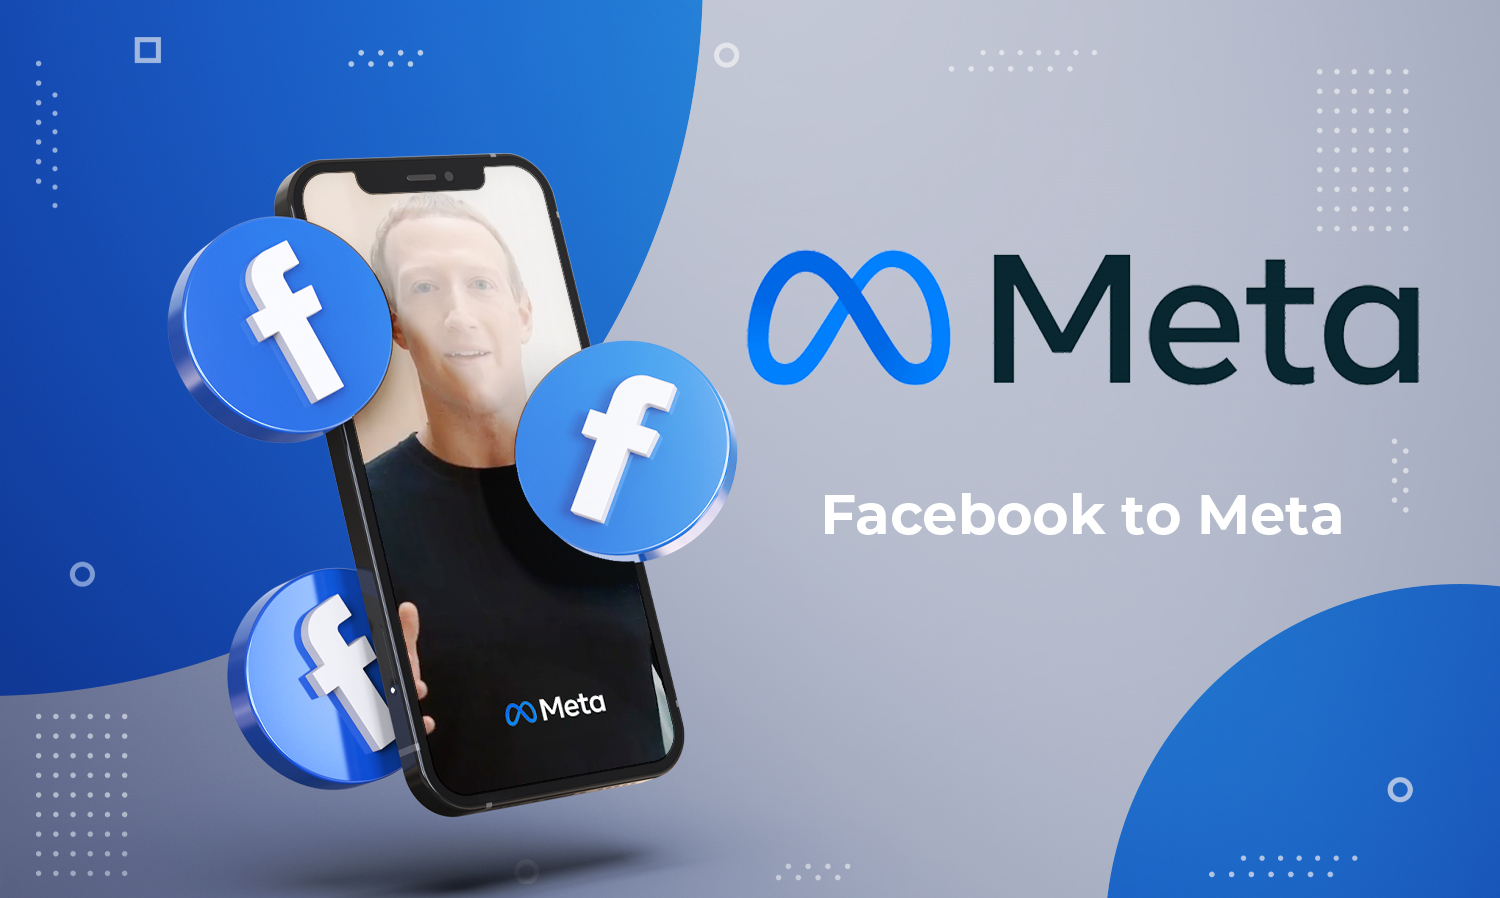 การเปลี่ยนชื่อของ-facebook-เป็น-meta-นั้นถือว่าเป็นการเปิดฉากยุคใหม่ของ-social-media-